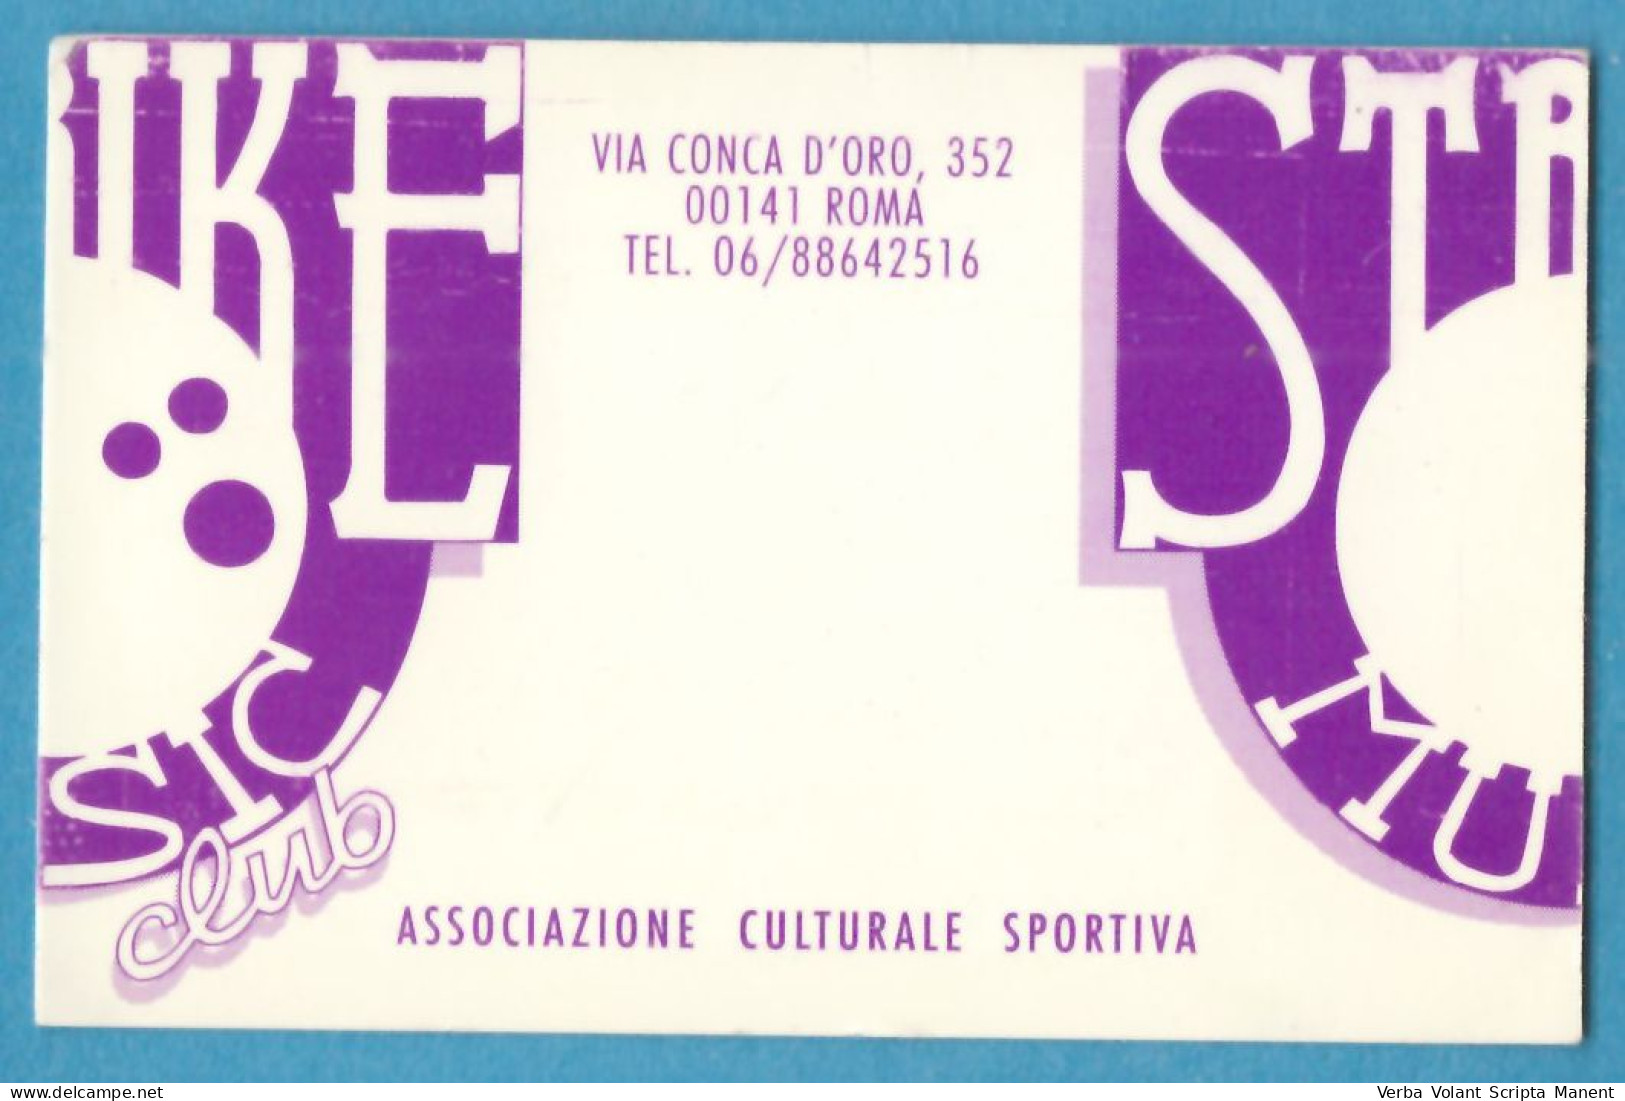 H-5800 * Italia - STRIKE MUSIC CLUB Associazione Culturale Sportiva - Via Conca D'Oro, 352 - Roma - Tessera N. 4071 - Membership Cards